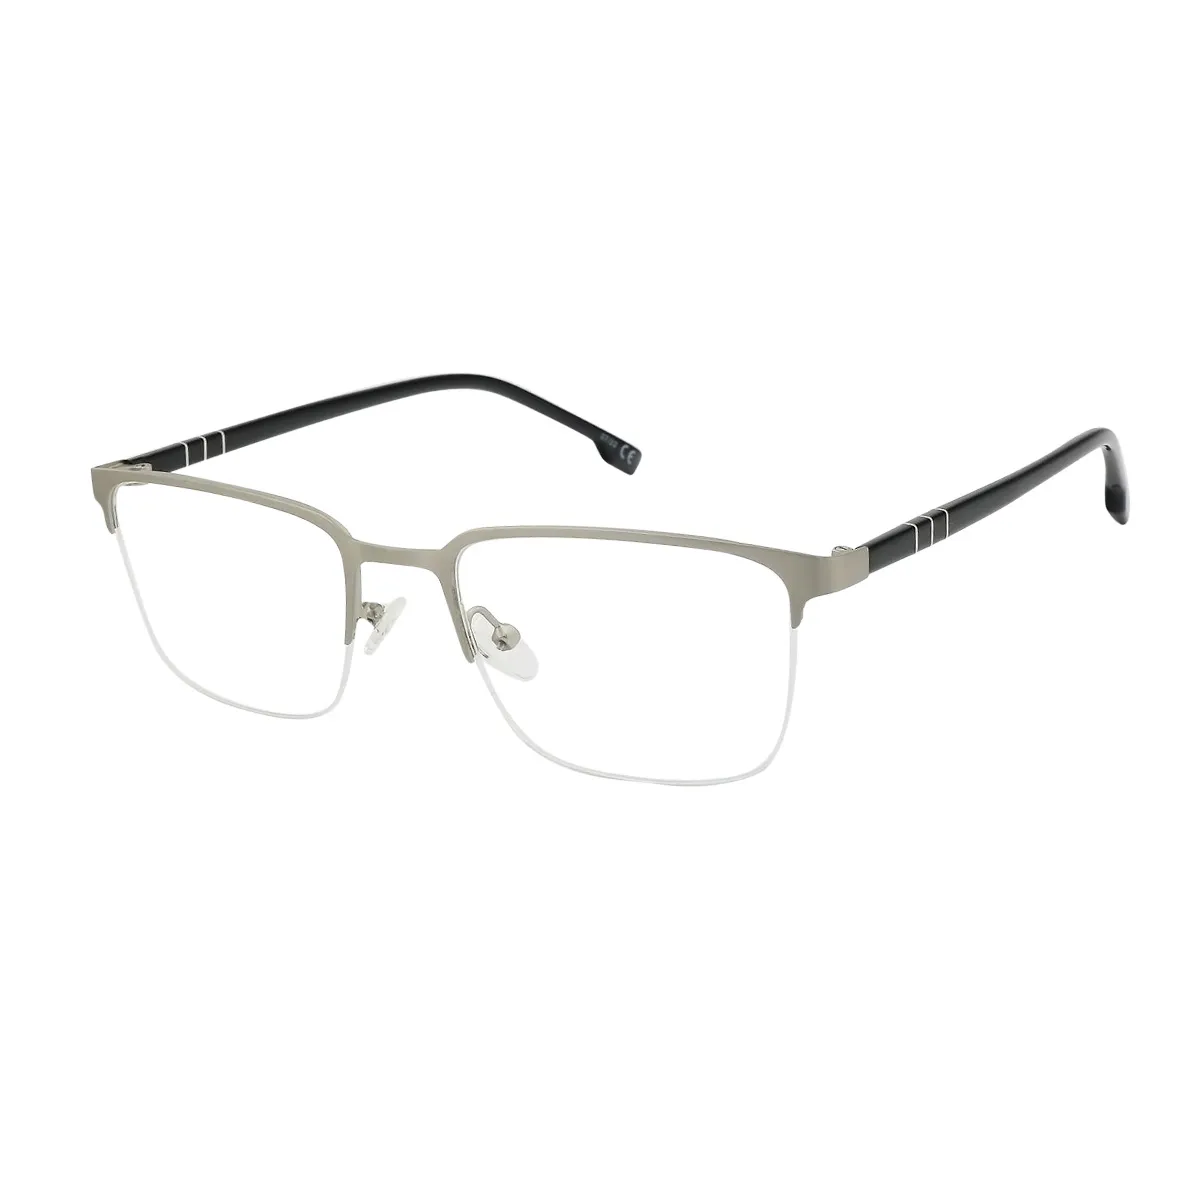 Hedda - Square Silver Matte Glasses for Men - EFE